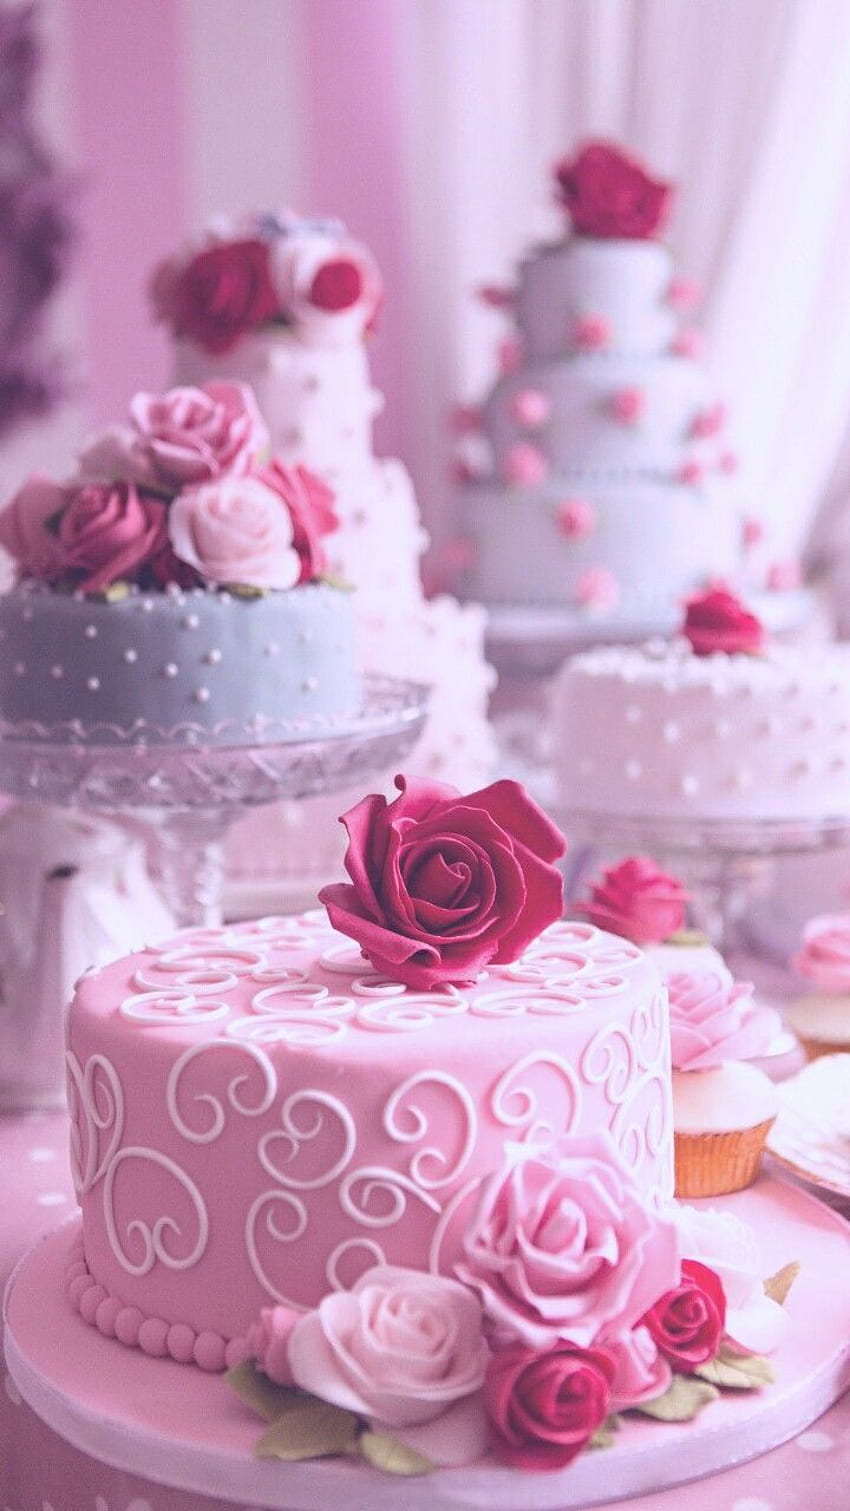 ピンクのケーキ、アート、背景、美しい、美しさ、ケーキ、装飾、装飾、おいしい、デザイン、デザート、花、食べ物、パステル、バラ、スタイル、砂糖、お菓子、ヴィンテージ、私たちはそれを心に留めています、ピンクの背景、ピンクのケーキ、 パステルピンク、パステルカラー、綺麗 HD電話の壁紙